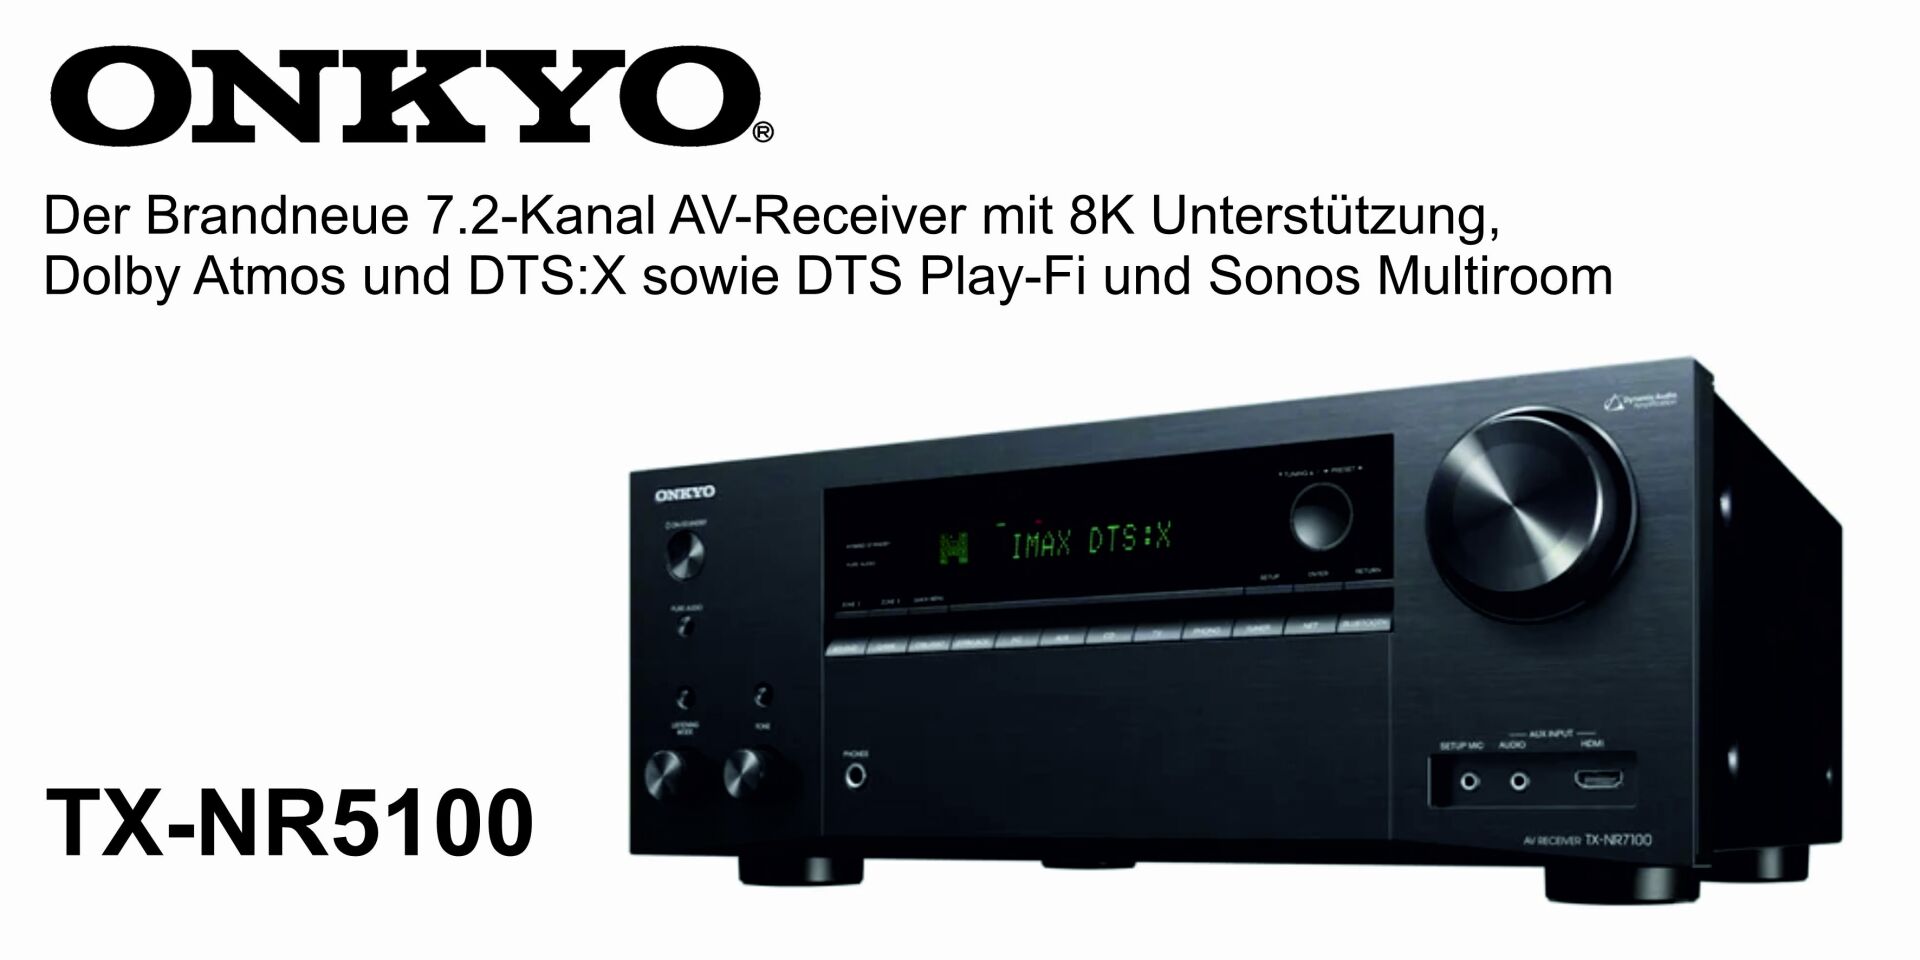 ONKYO TX-NR5100 - Der neue 7.2-Kanal 8K AV-Receiver